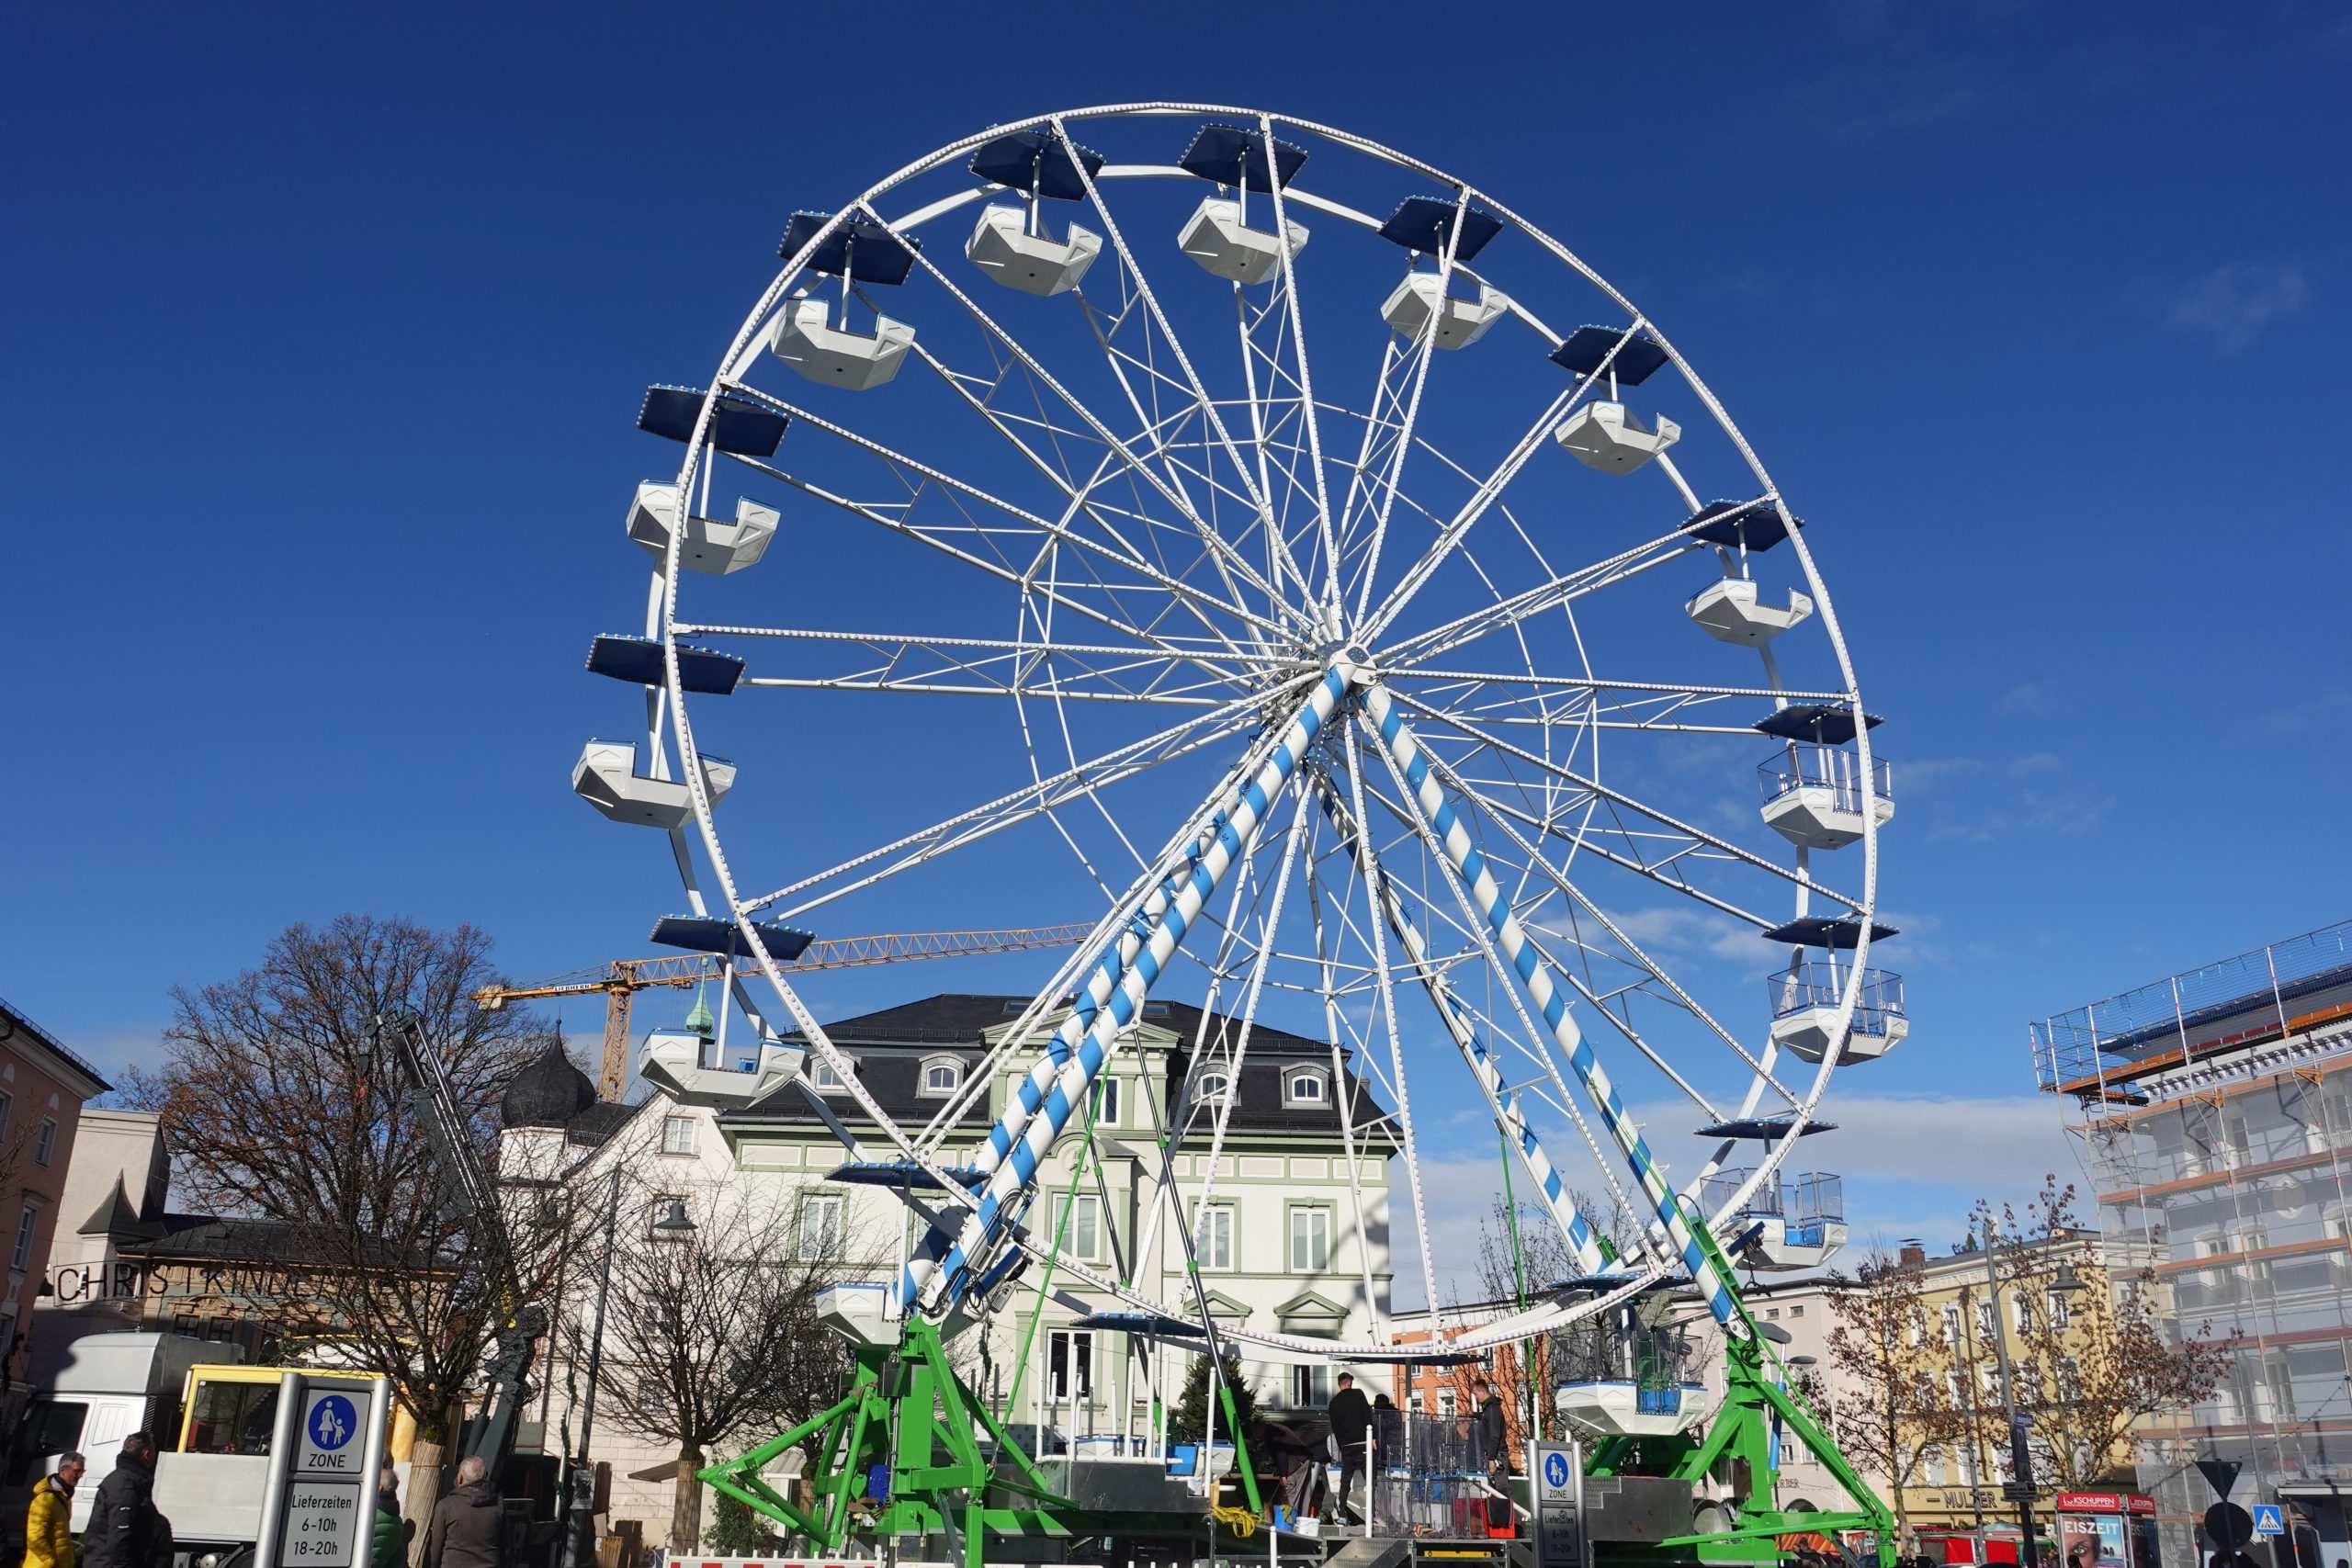 Riesenrad am Ludwigsplatz in Rosenheim vor blauem Himmel